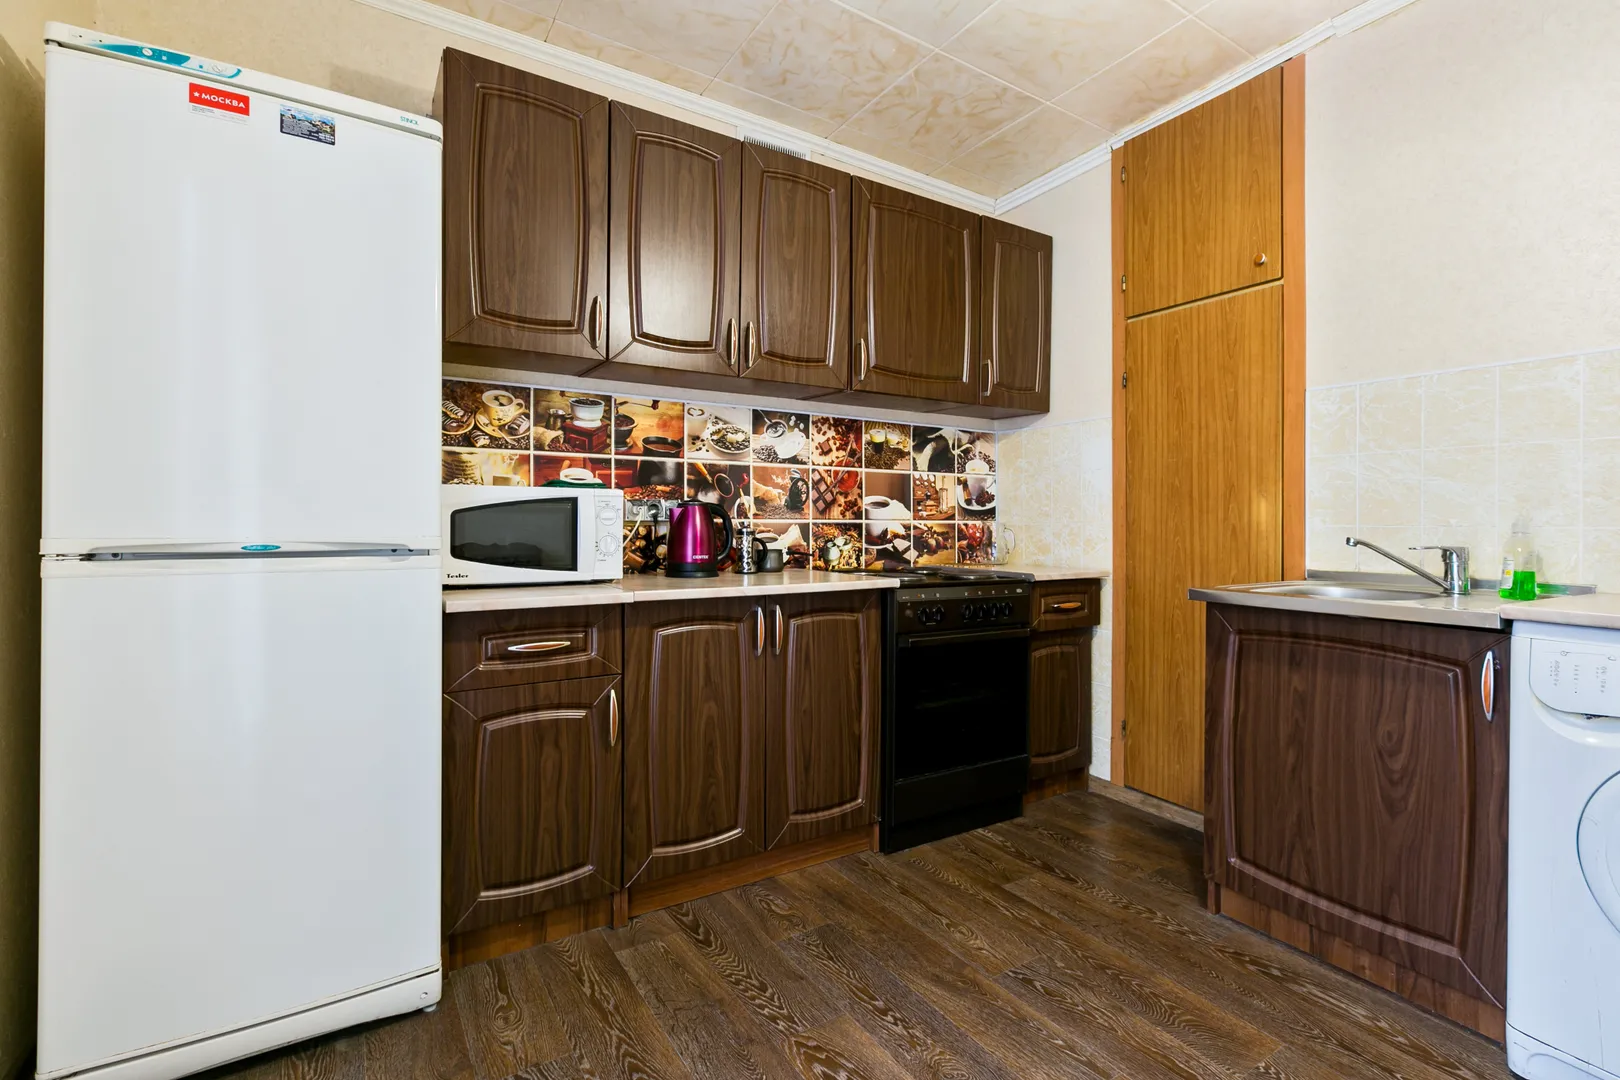 Просторная кухня со всей необходимой мебелью и техникой, ЖК-телевизор, стиральная машина-автомат. Имеется весь комплект посуды для приготовления и приема пищи.